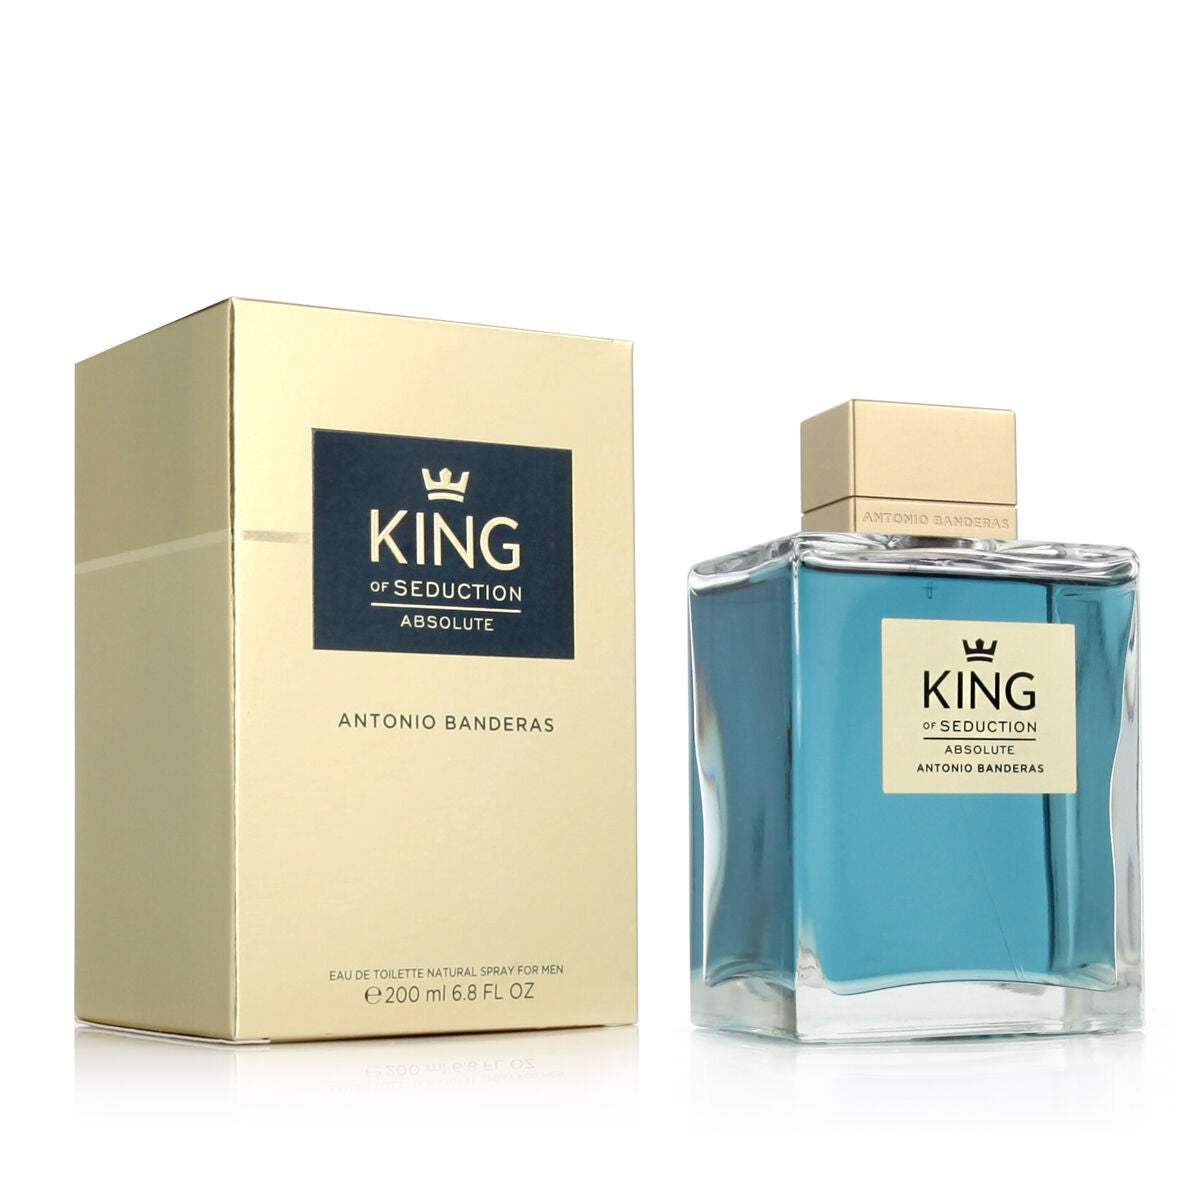 Parfum Homme Antonio Banderas EDT King of Seduction Absolute 200 ml - Antonio Banderas - Jardin D'Eyden - jardindeyden.fr